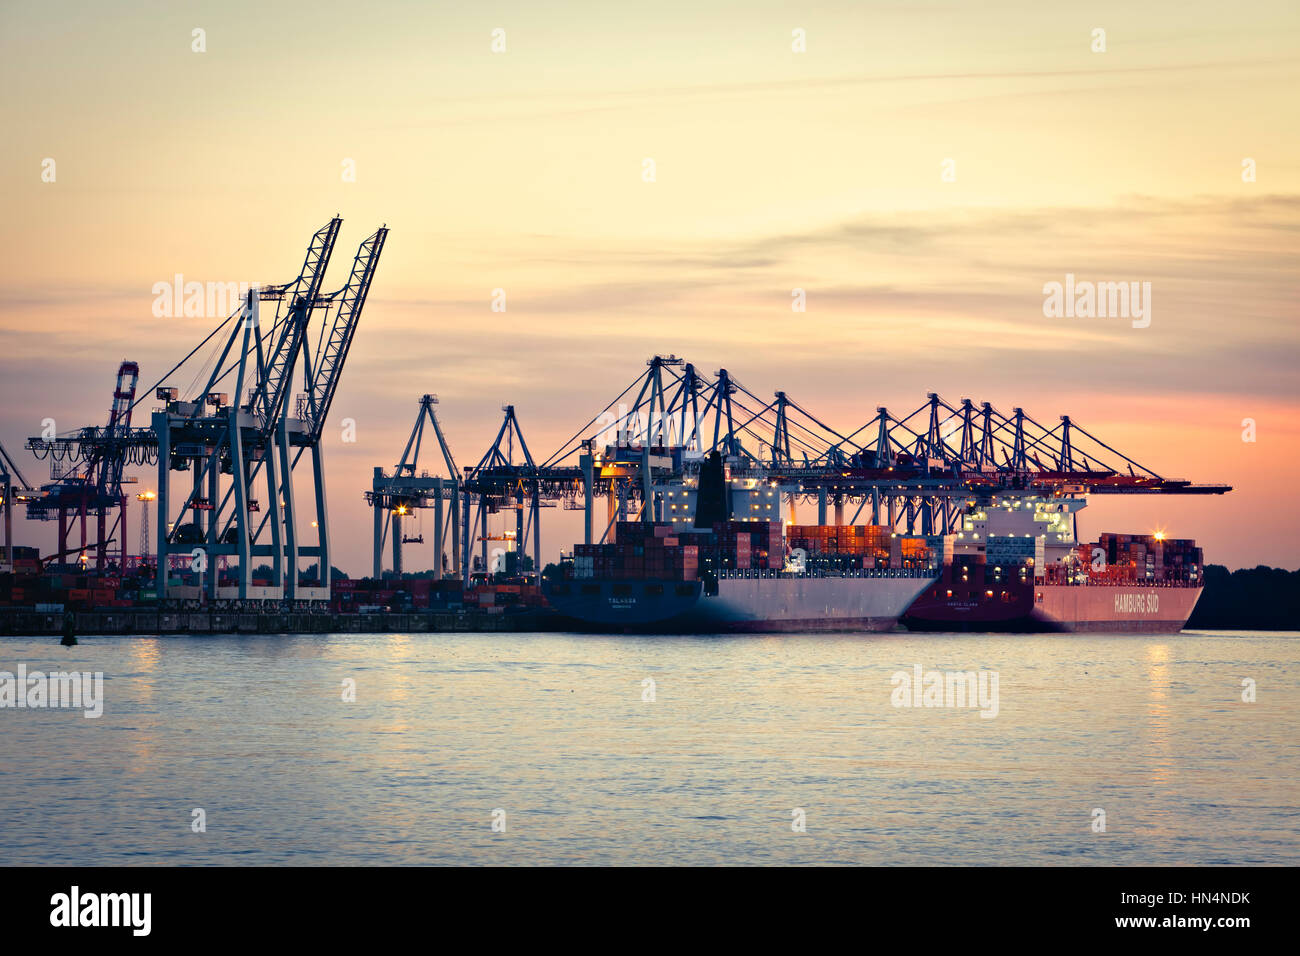 Hamburg, Deutschland - 24. Juli 2012: Zwei große Containerschiffe, die Talassa und das Santa Clara am terminal Burchardkai an der Elbe angedockt sind. Stockfoto